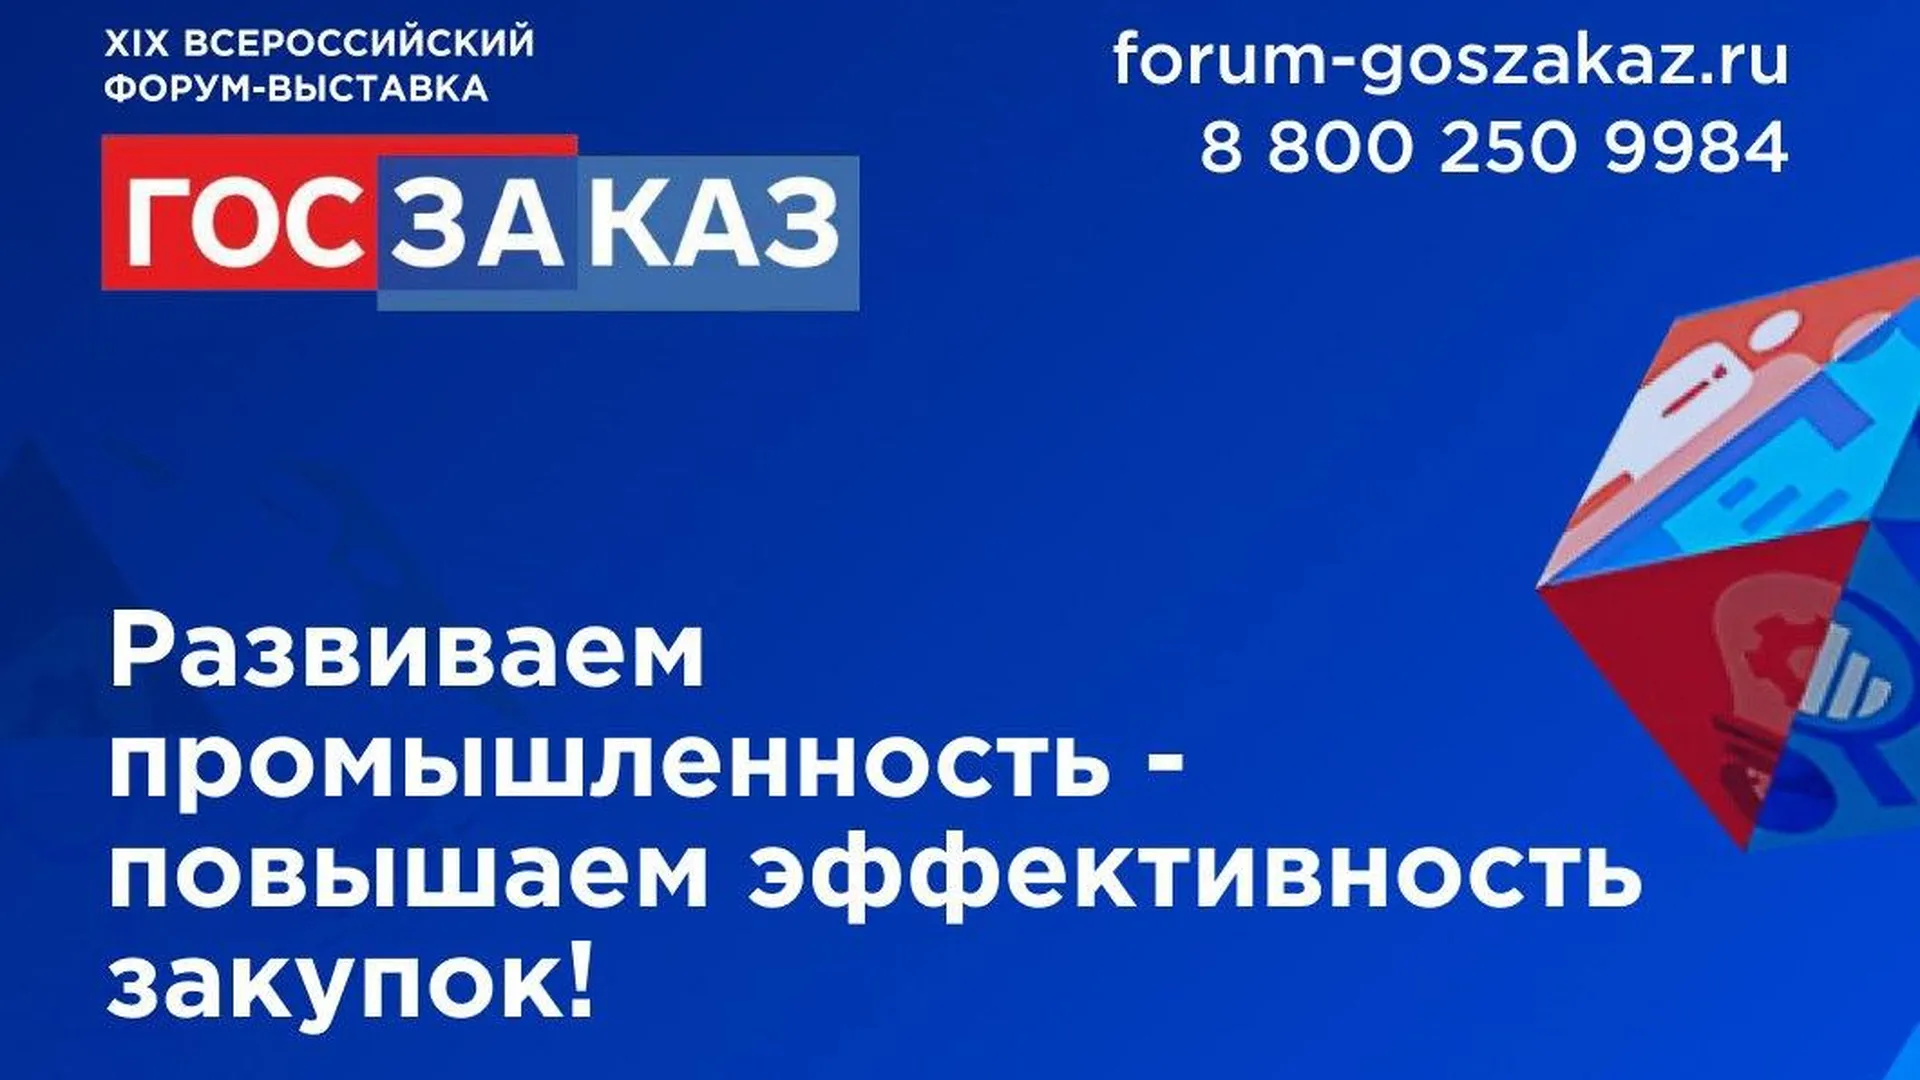 Пресс-служба Форума-выставки «ГОСЗАКАЗ».